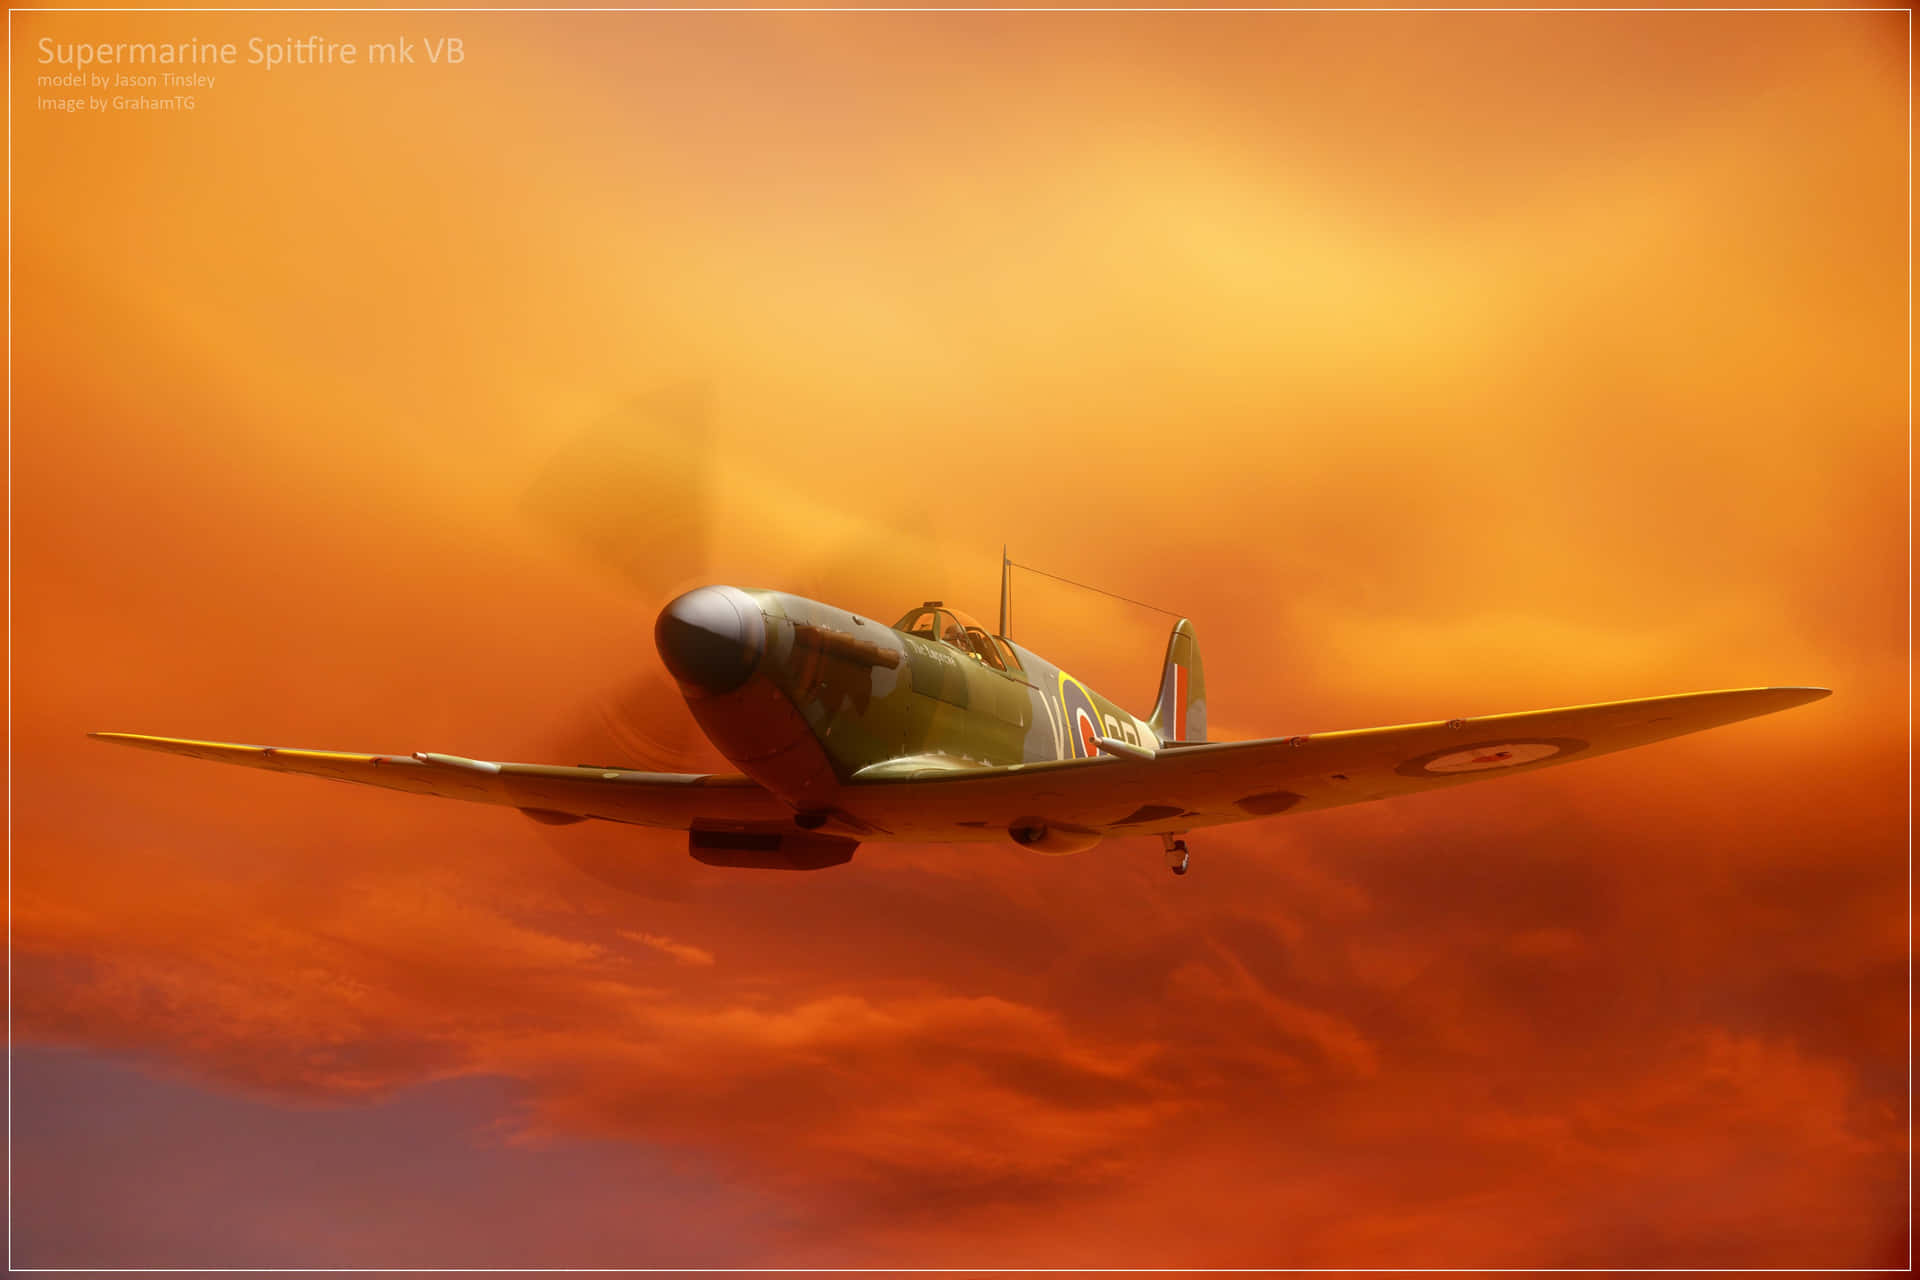 Einspitfire-flugzeug, Das Durch Die Luft Gleitet Und Triumph, Mut Und Stärke Repräsentiert. Wallpaper